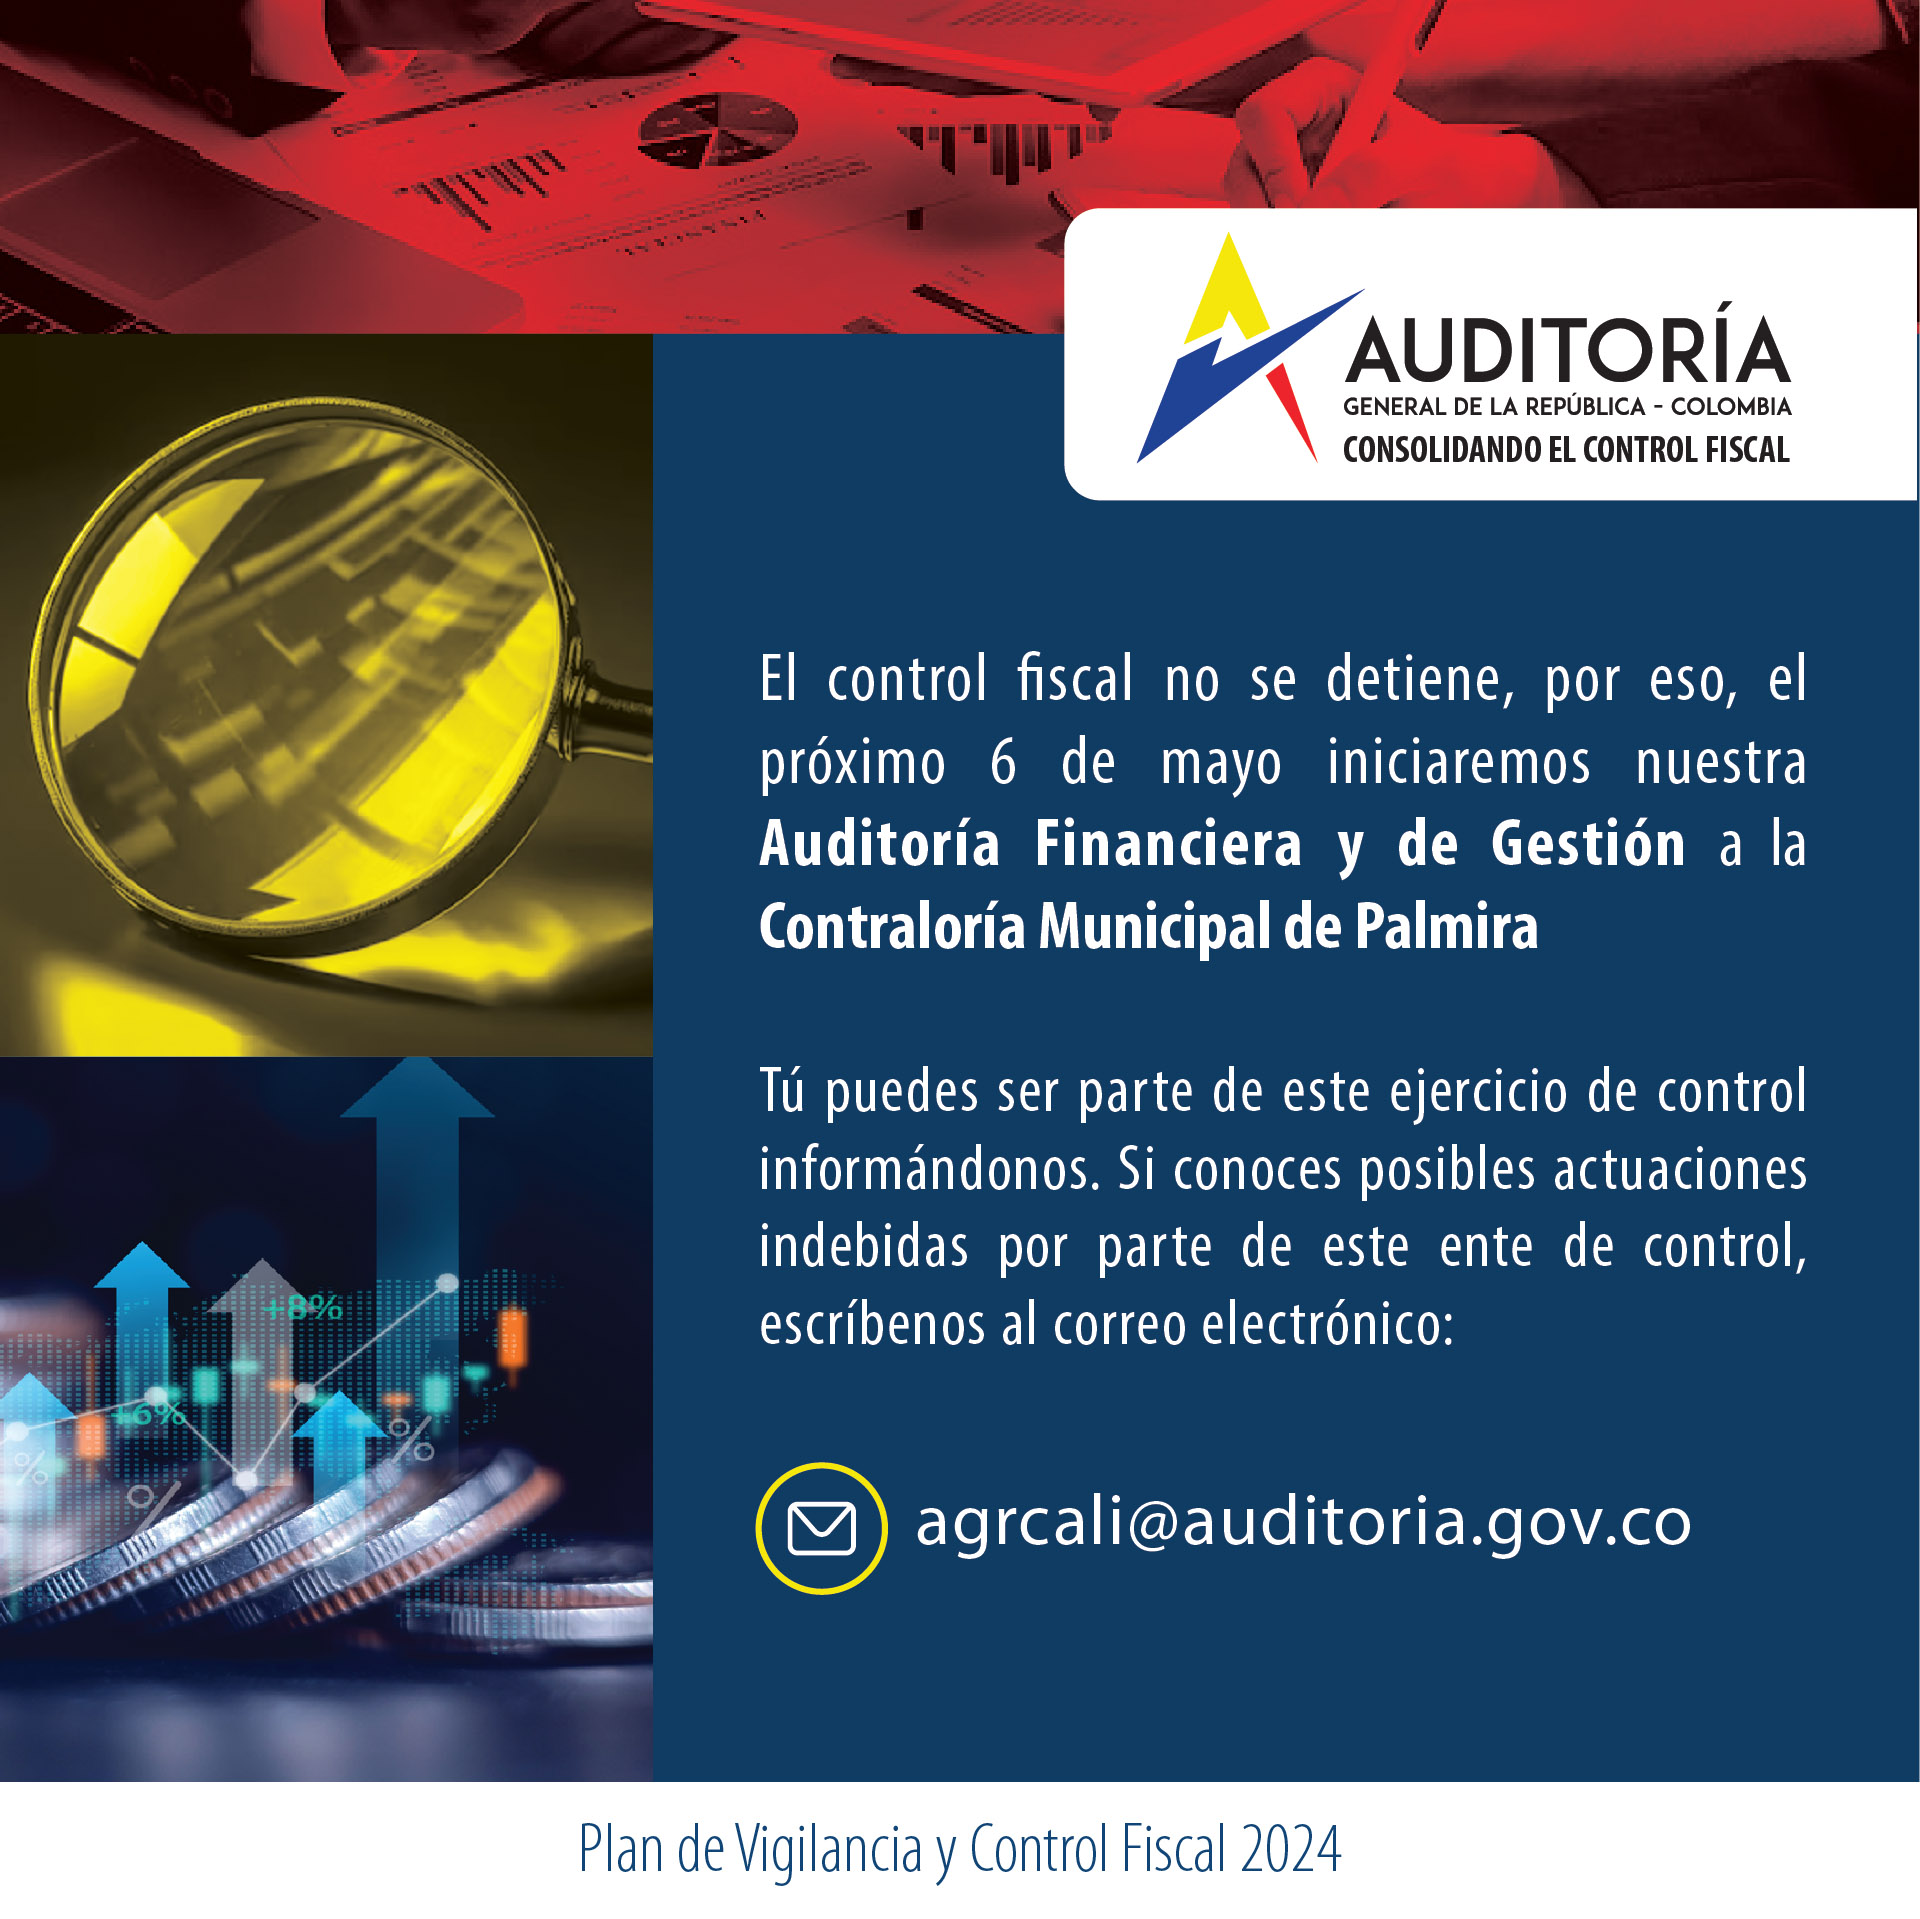 Invitación a ciudadanía a brindar información para Auditoría Financiera y de Gestión a Contraloría de Palmira